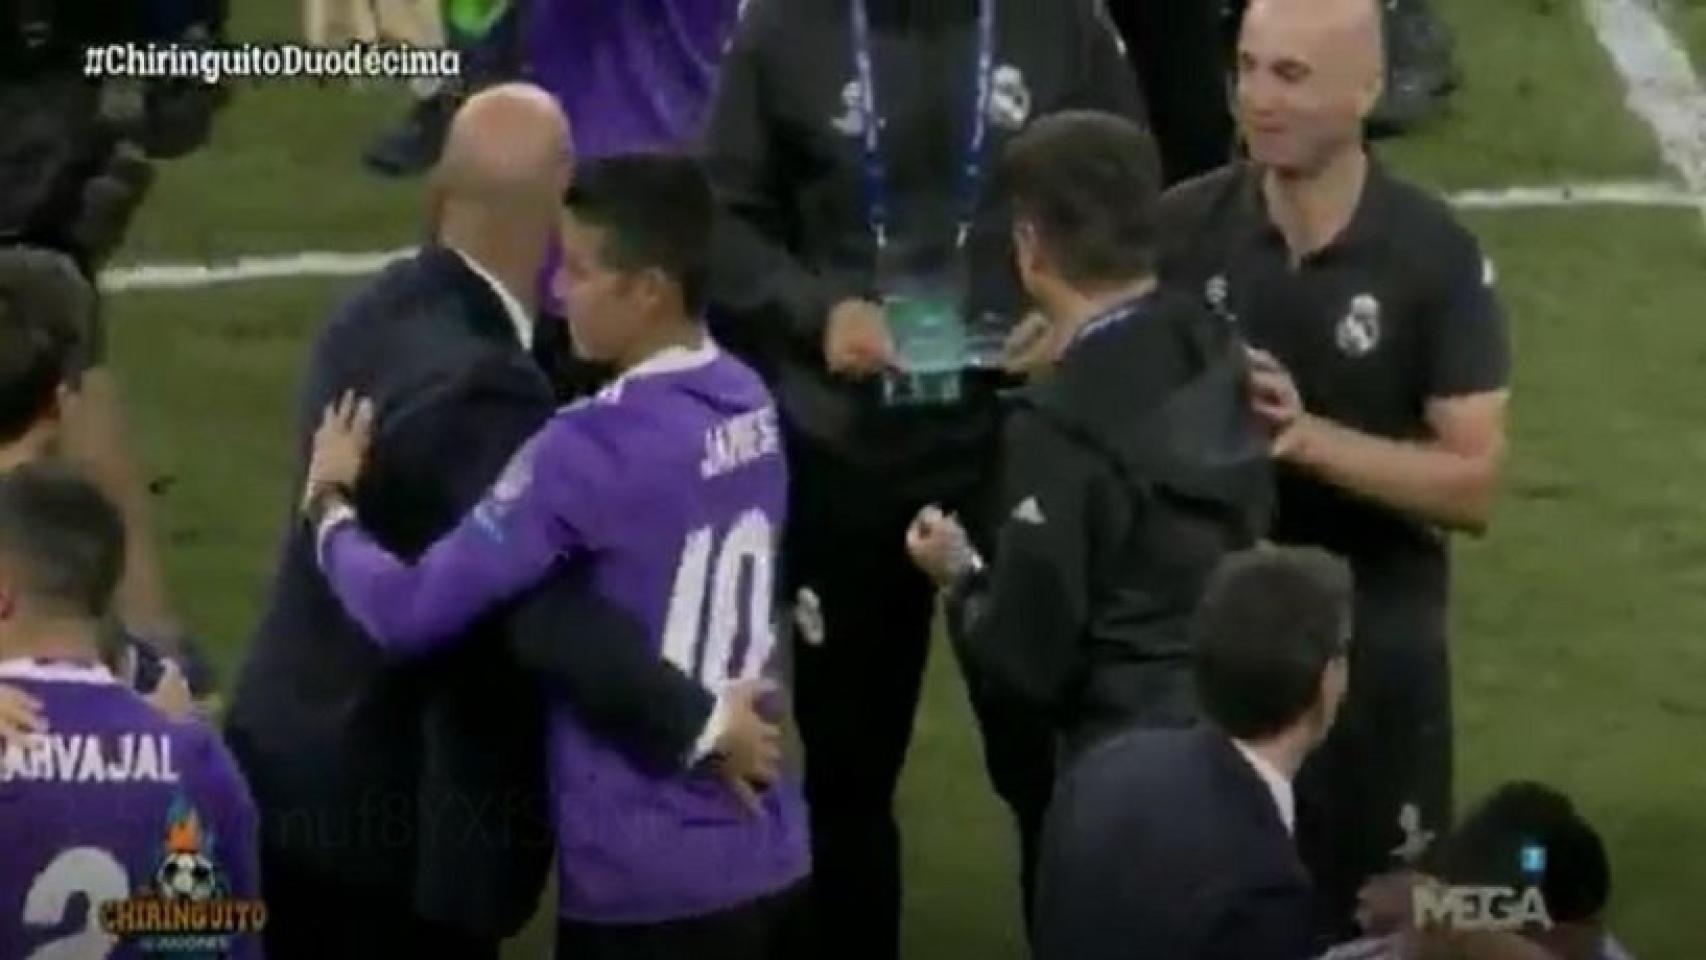 El saludo entre Zidane y James. Foto: El Chiringuito de Jugones